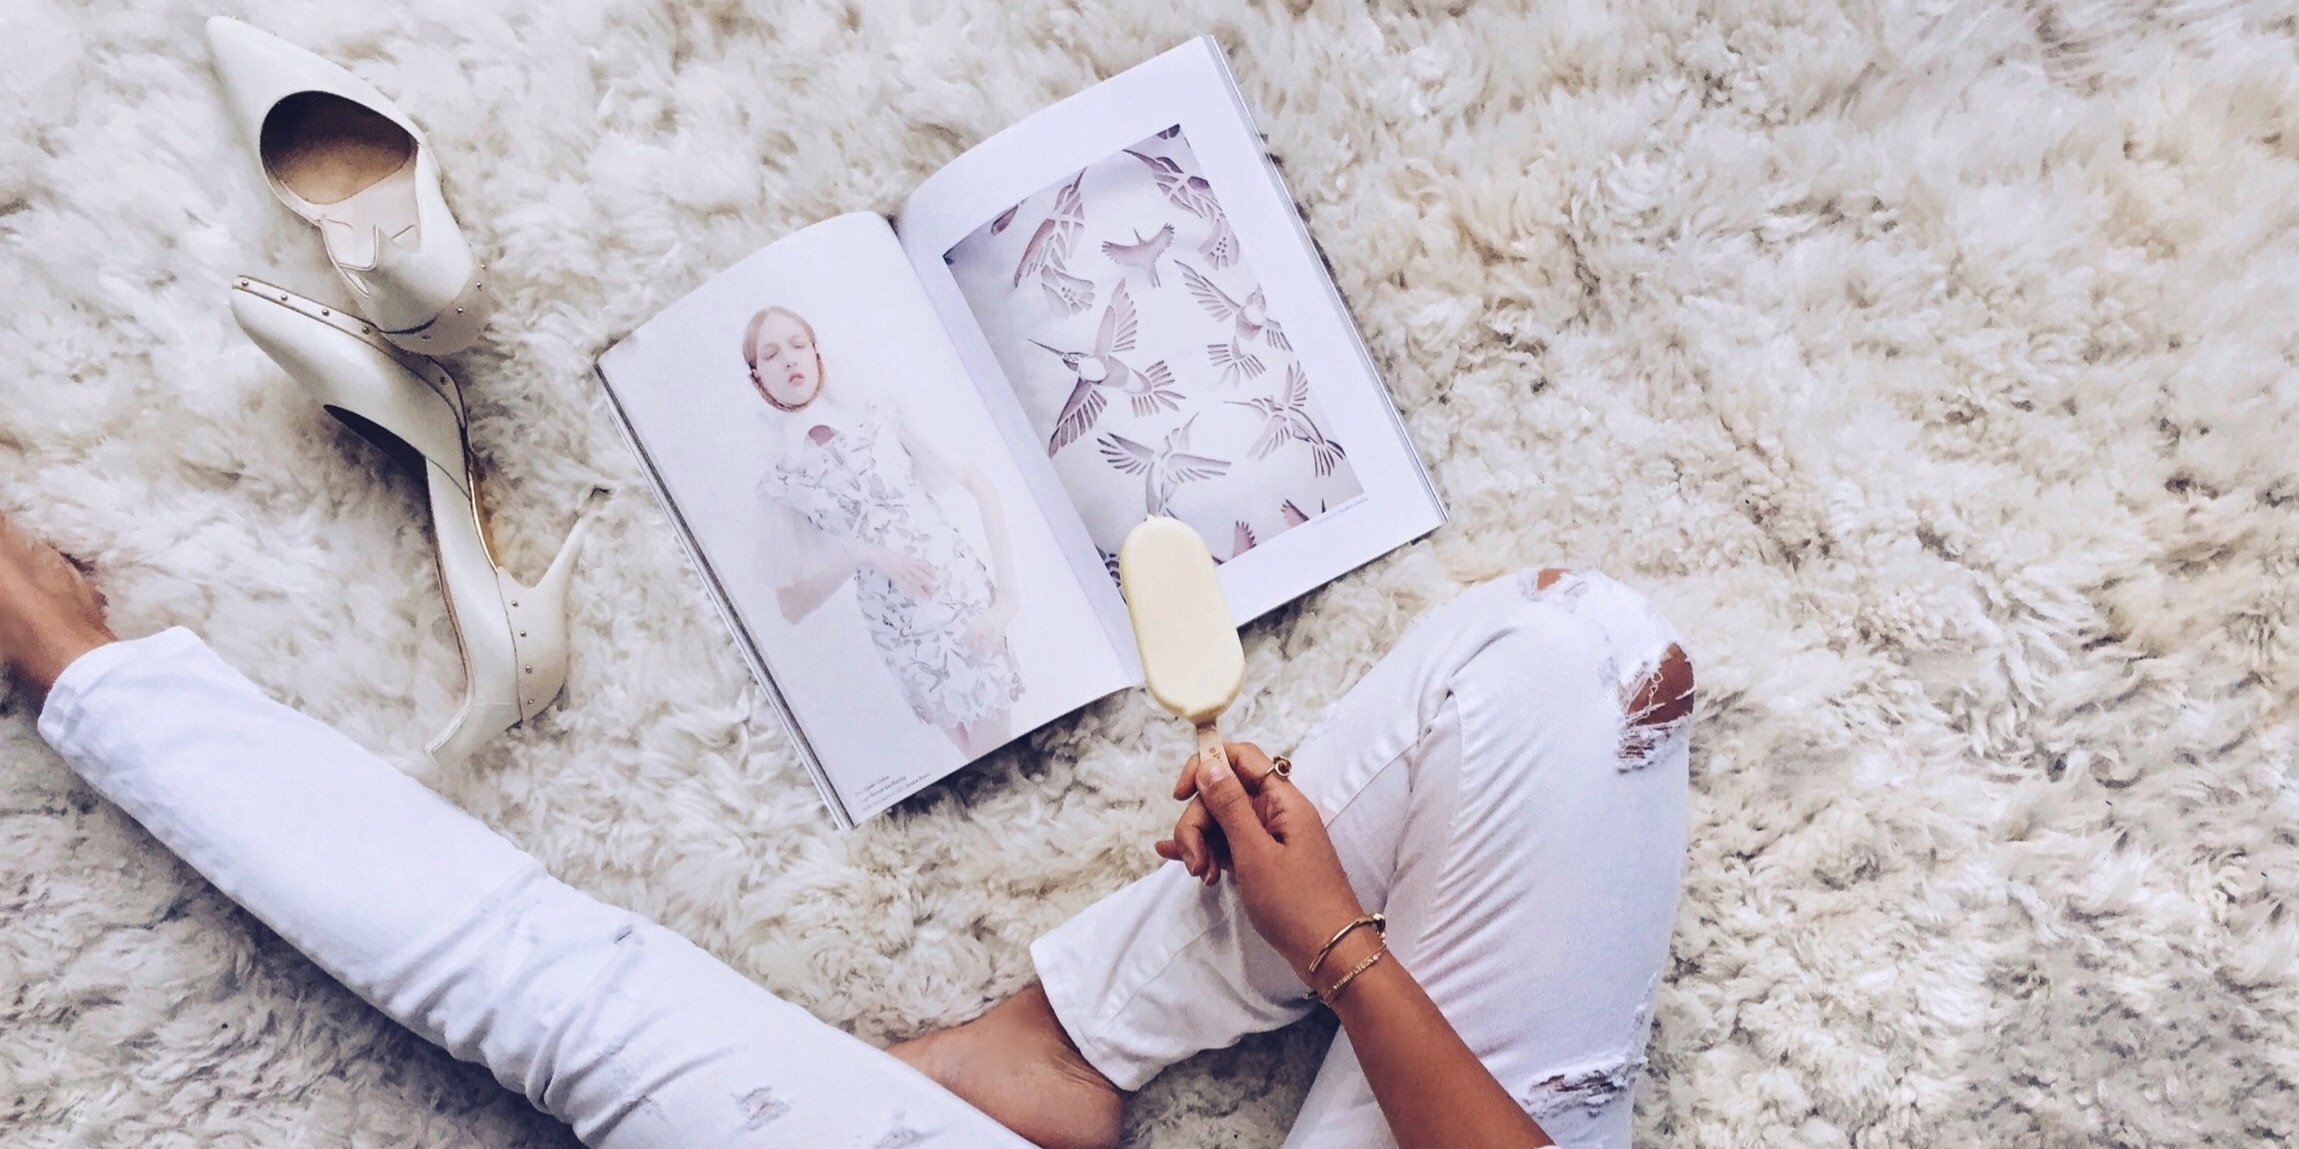  รูปหญิงสาวนั่งถือไอศกรีมแม็กนั่ม ไวท์ อัลมอนด์ และหน้านิตยสาร